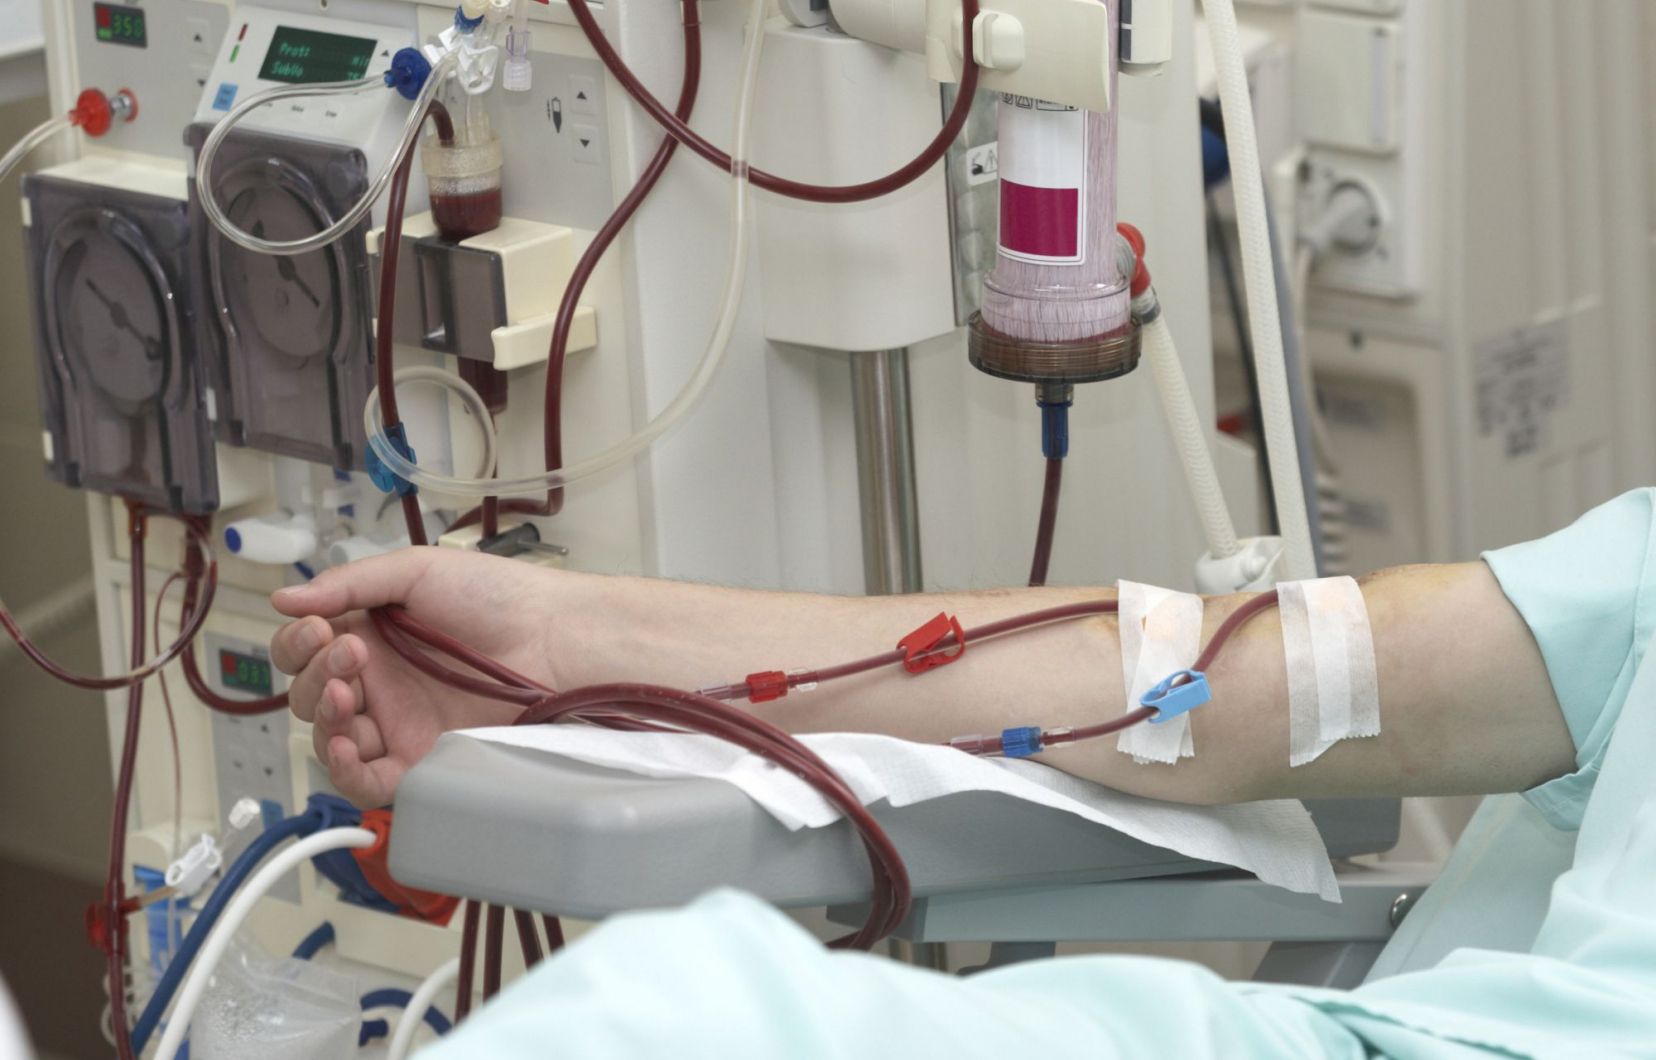 Imzouren : Le centre d'hémodialyse opérationnel d’ici la fin de l’année